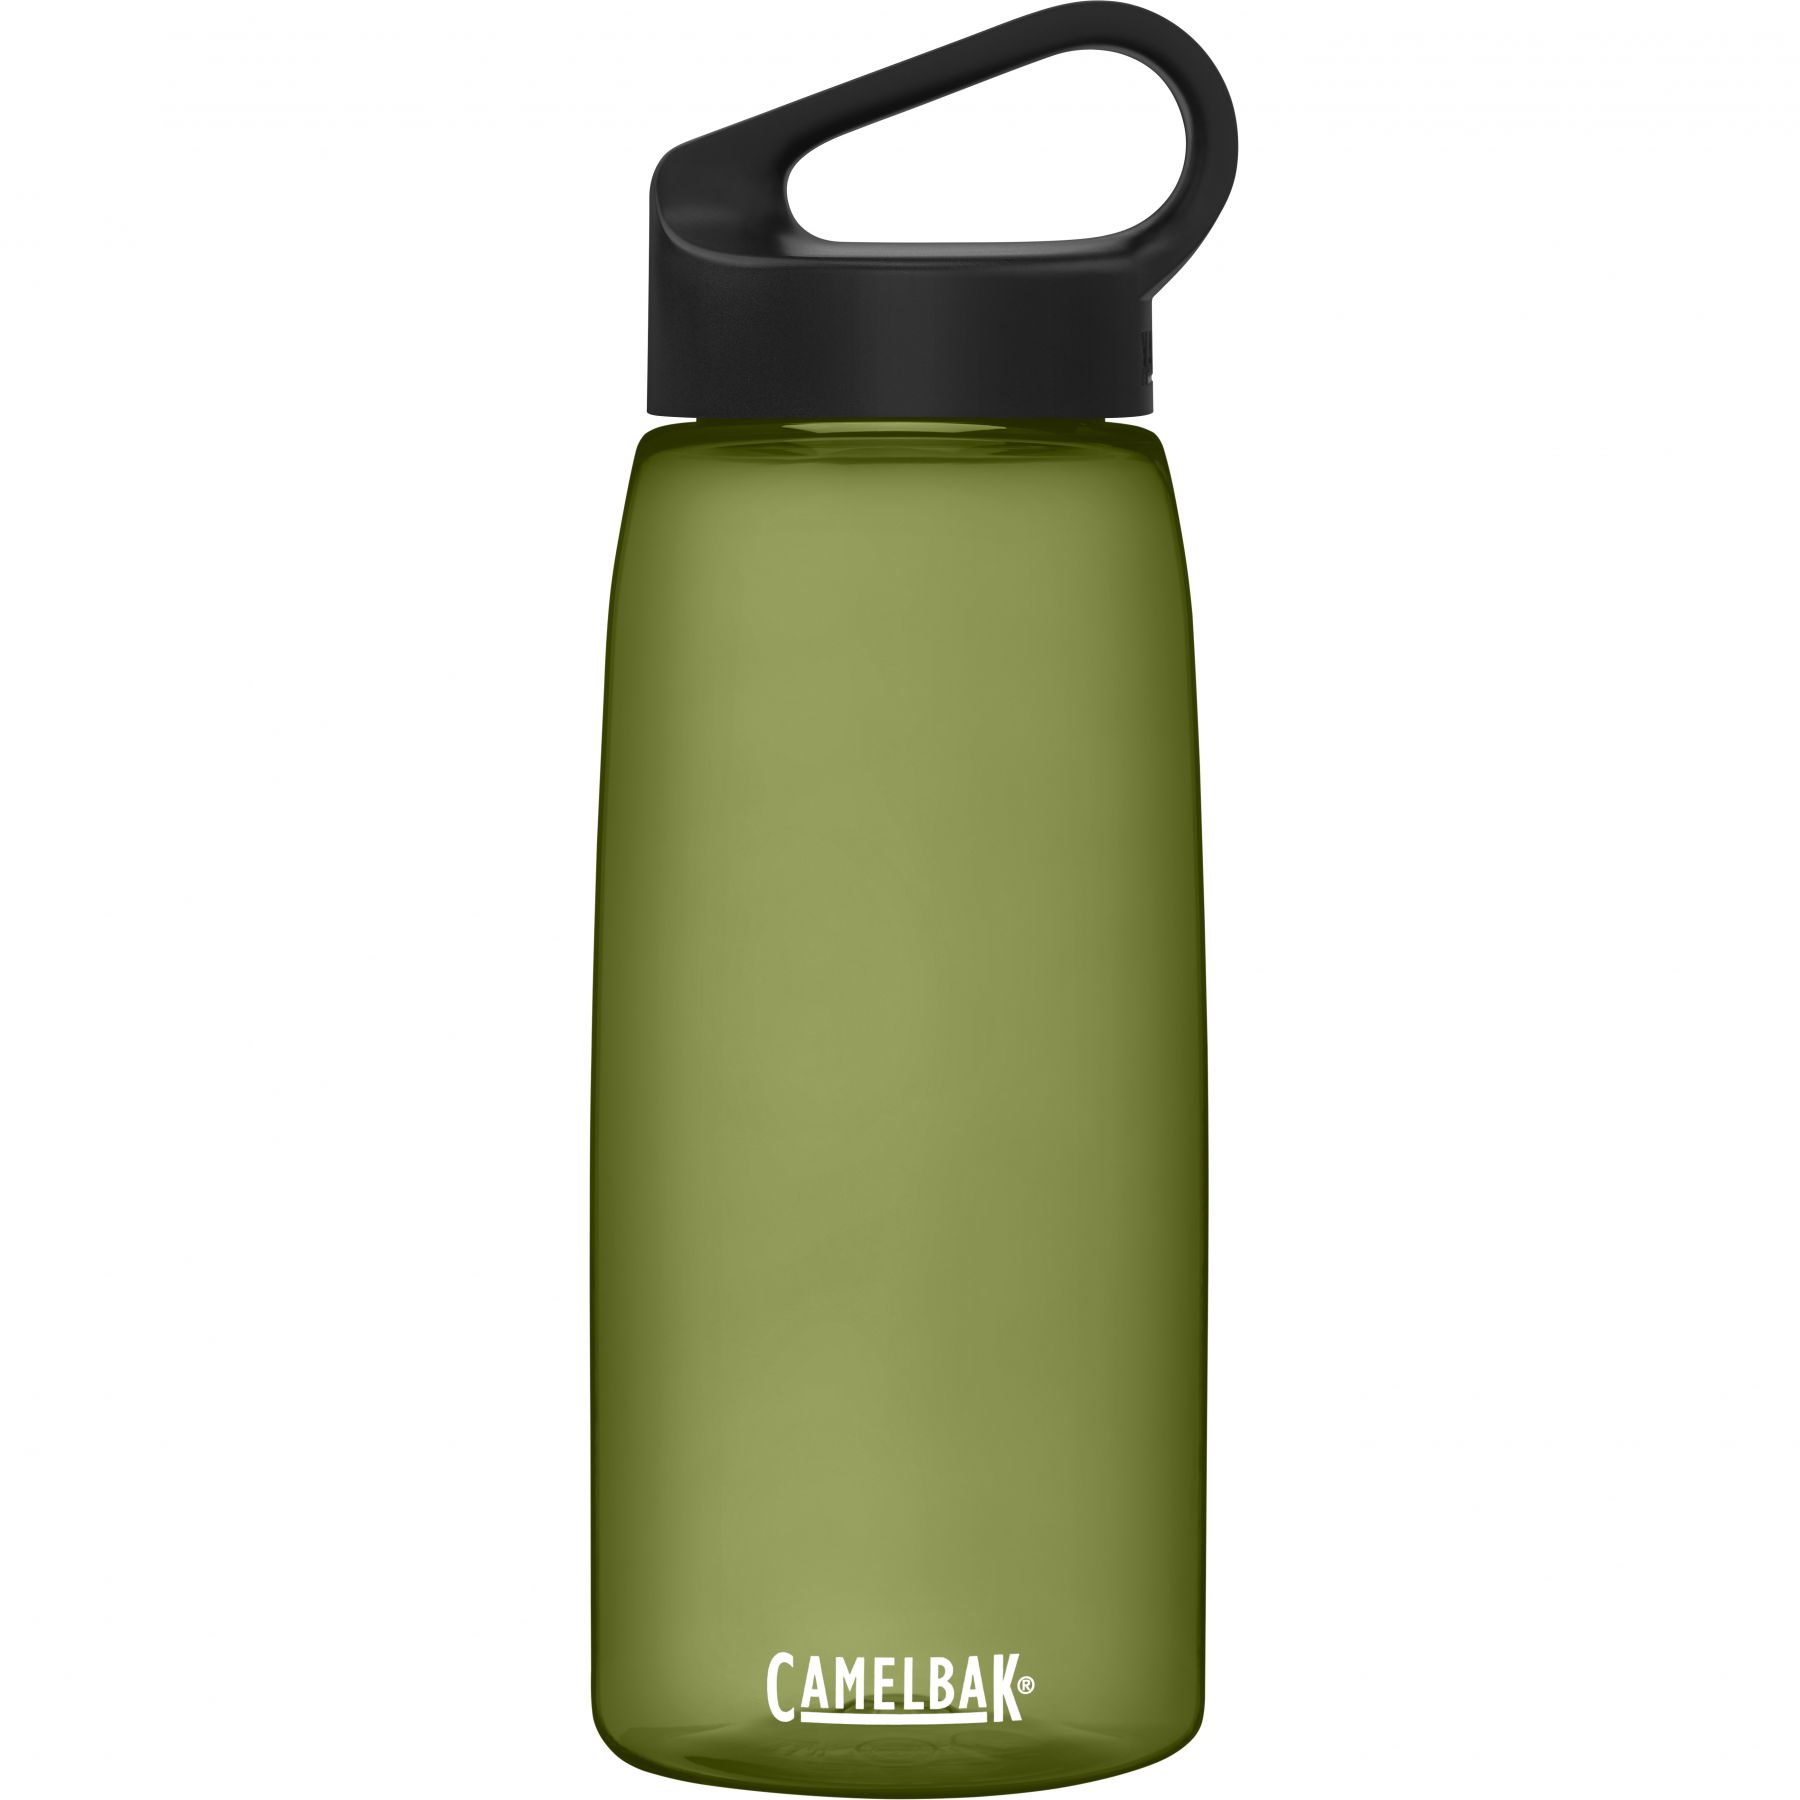 Billede af CamelBak Carry Cap, drikkedunk, 1L, grøn